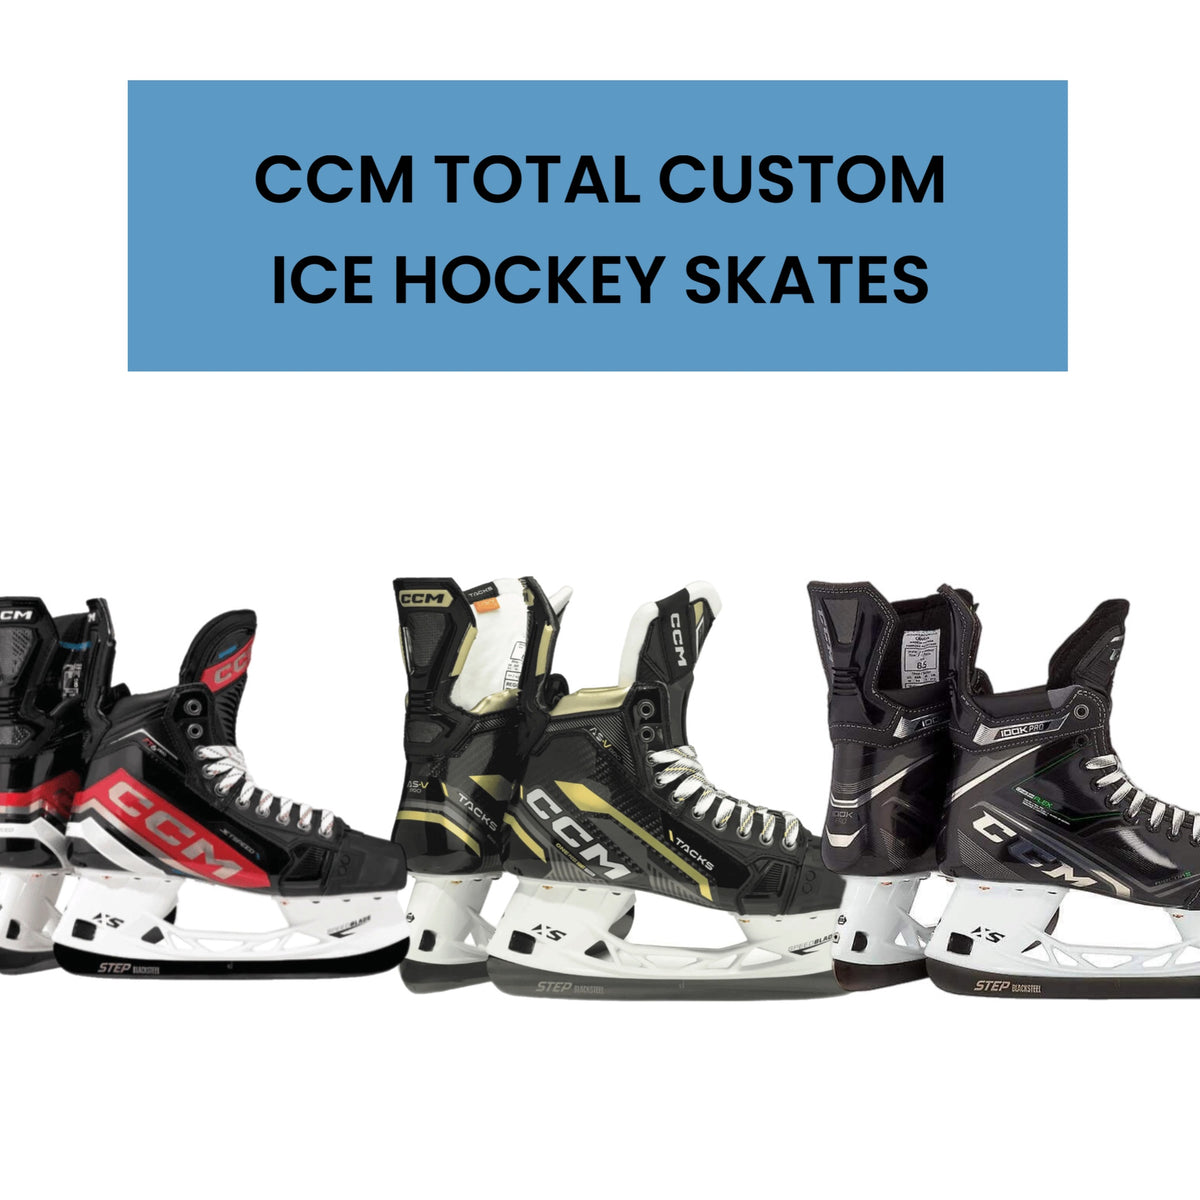 CCM Total Custom Ice Hockey Skates